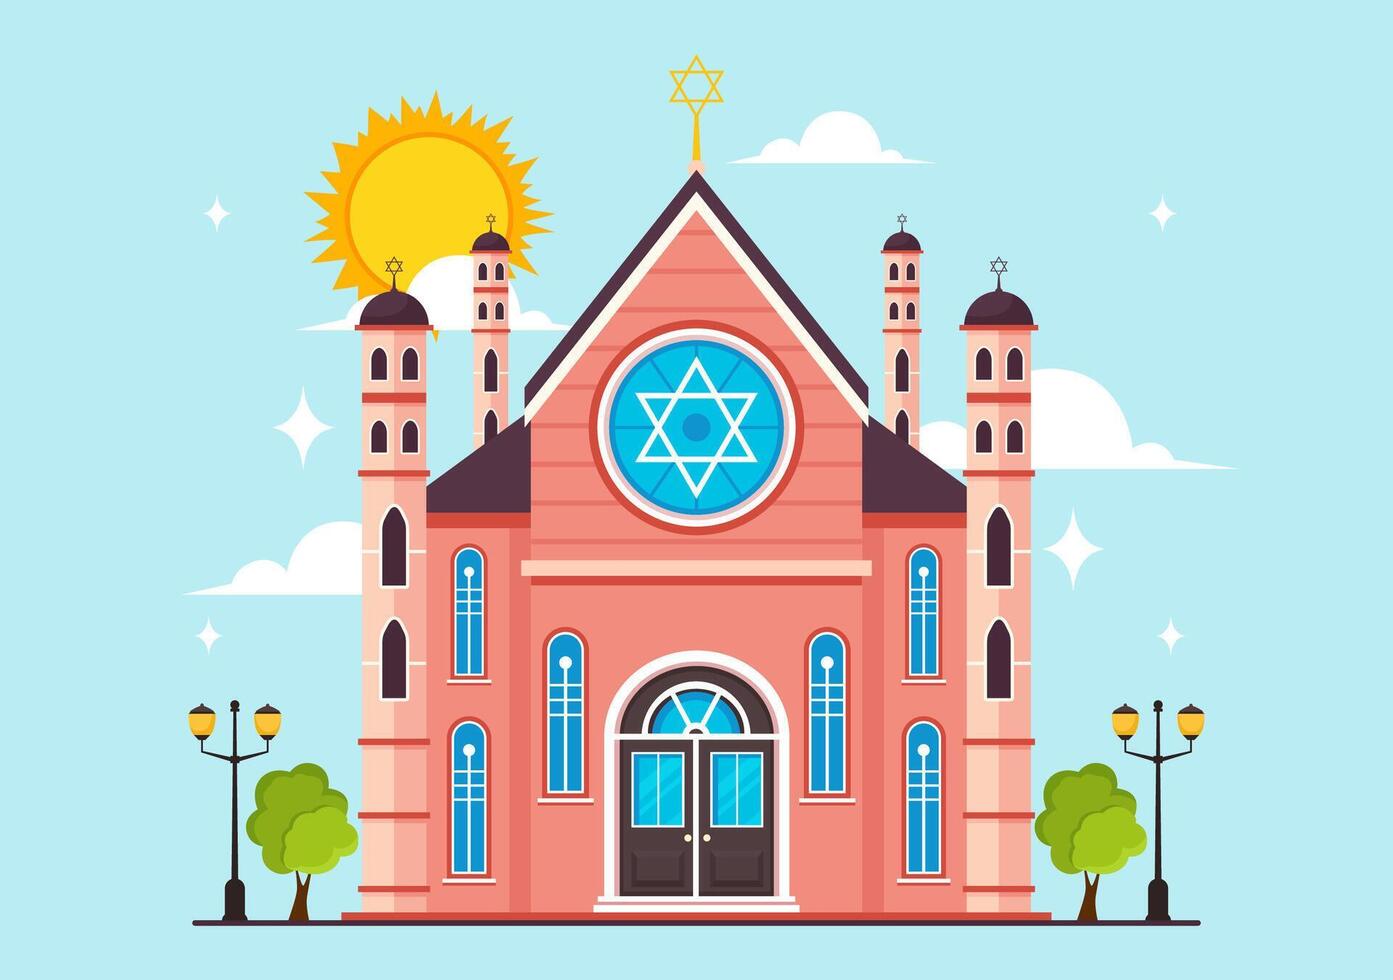 synagoga byggnad eller jewish tempel vektor illustration med religiös, hebré eller judendom och jude dyrkan plats i platt tecknad serie bakgrund